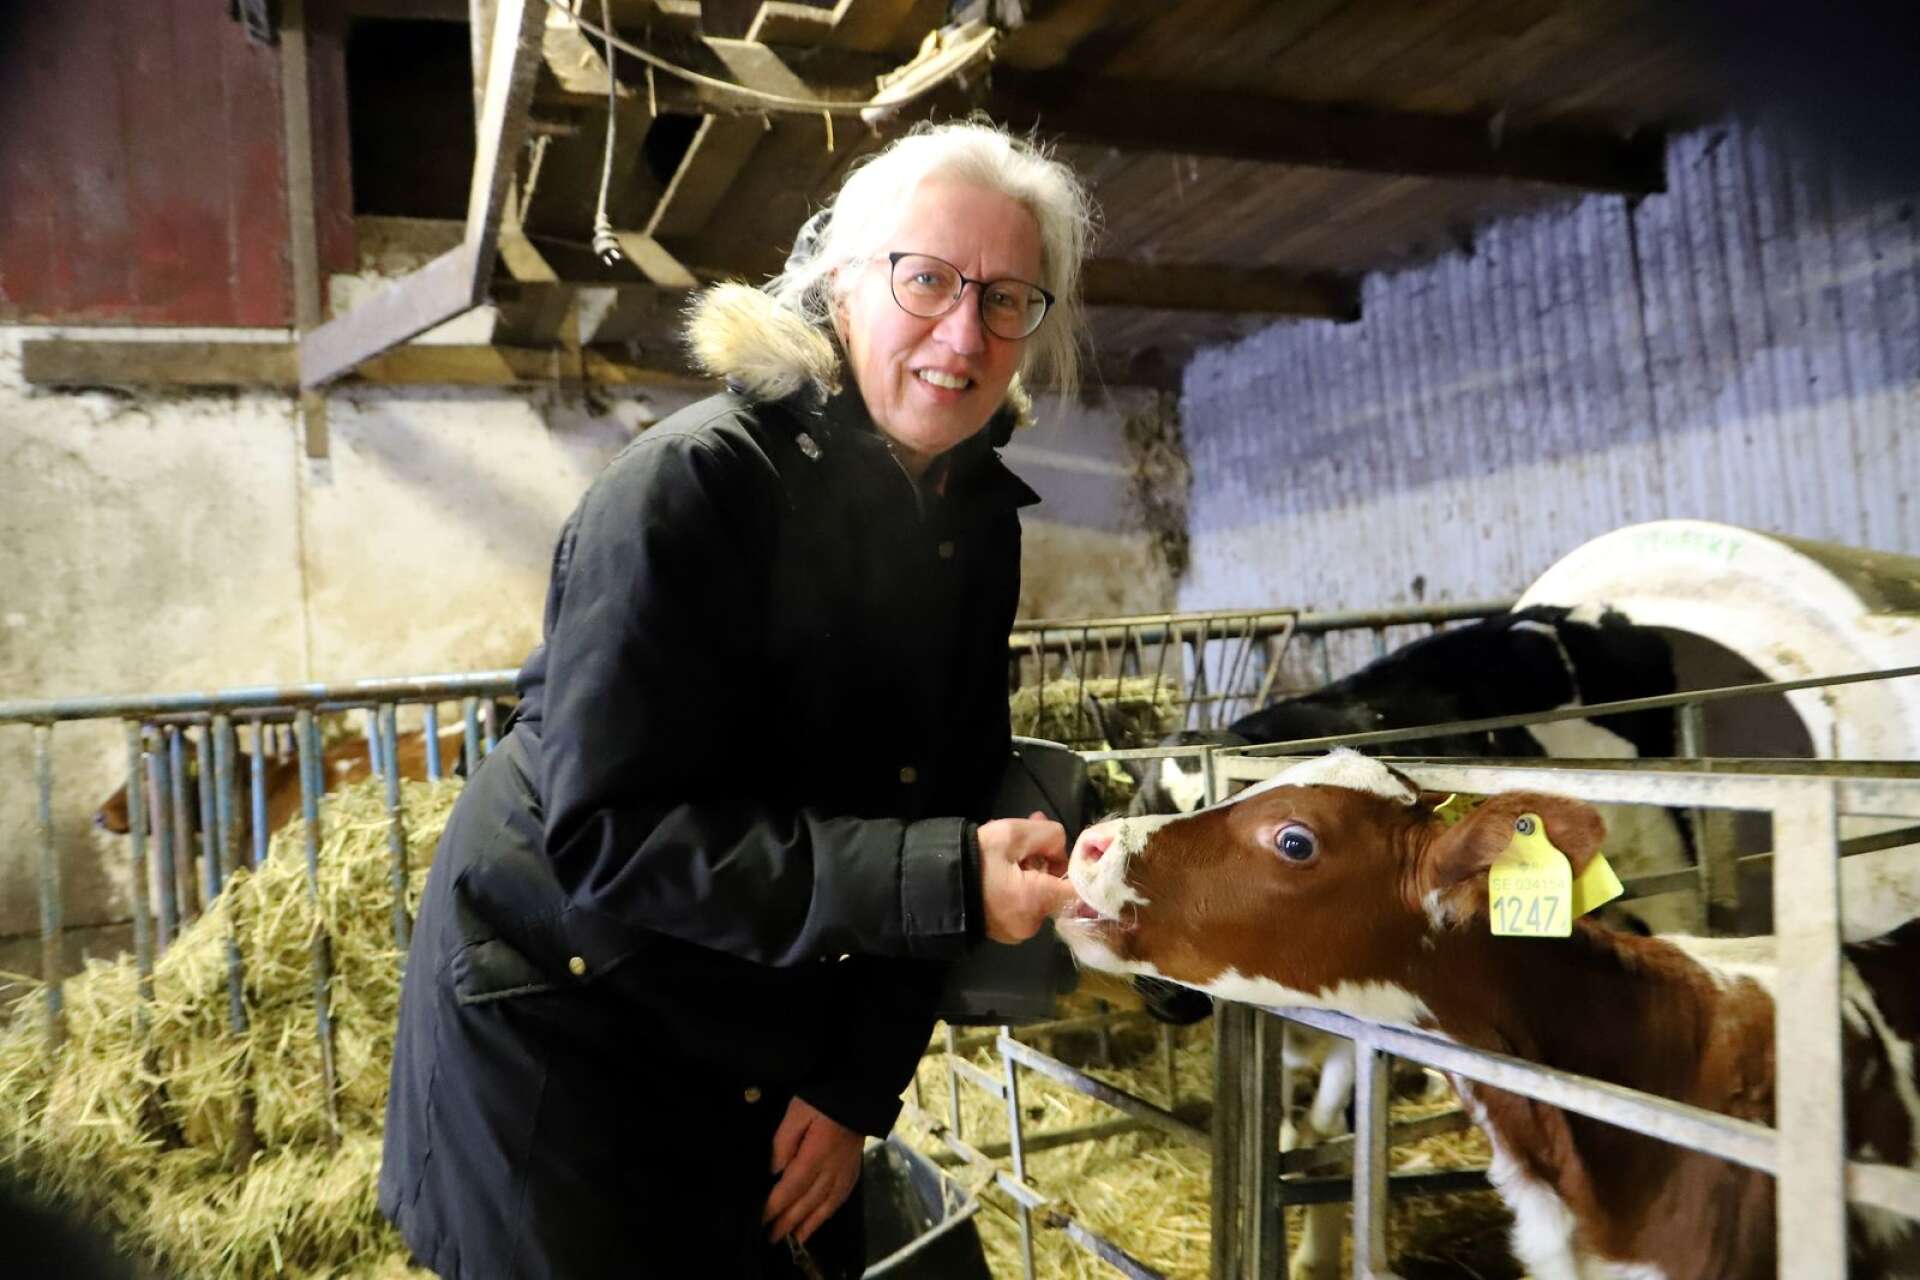 Horntvetens gård är ett familjejordbruk med i huvudsak produktion av mjölk och kött. Här Lena Hansson hälsar på en av kalvarna.